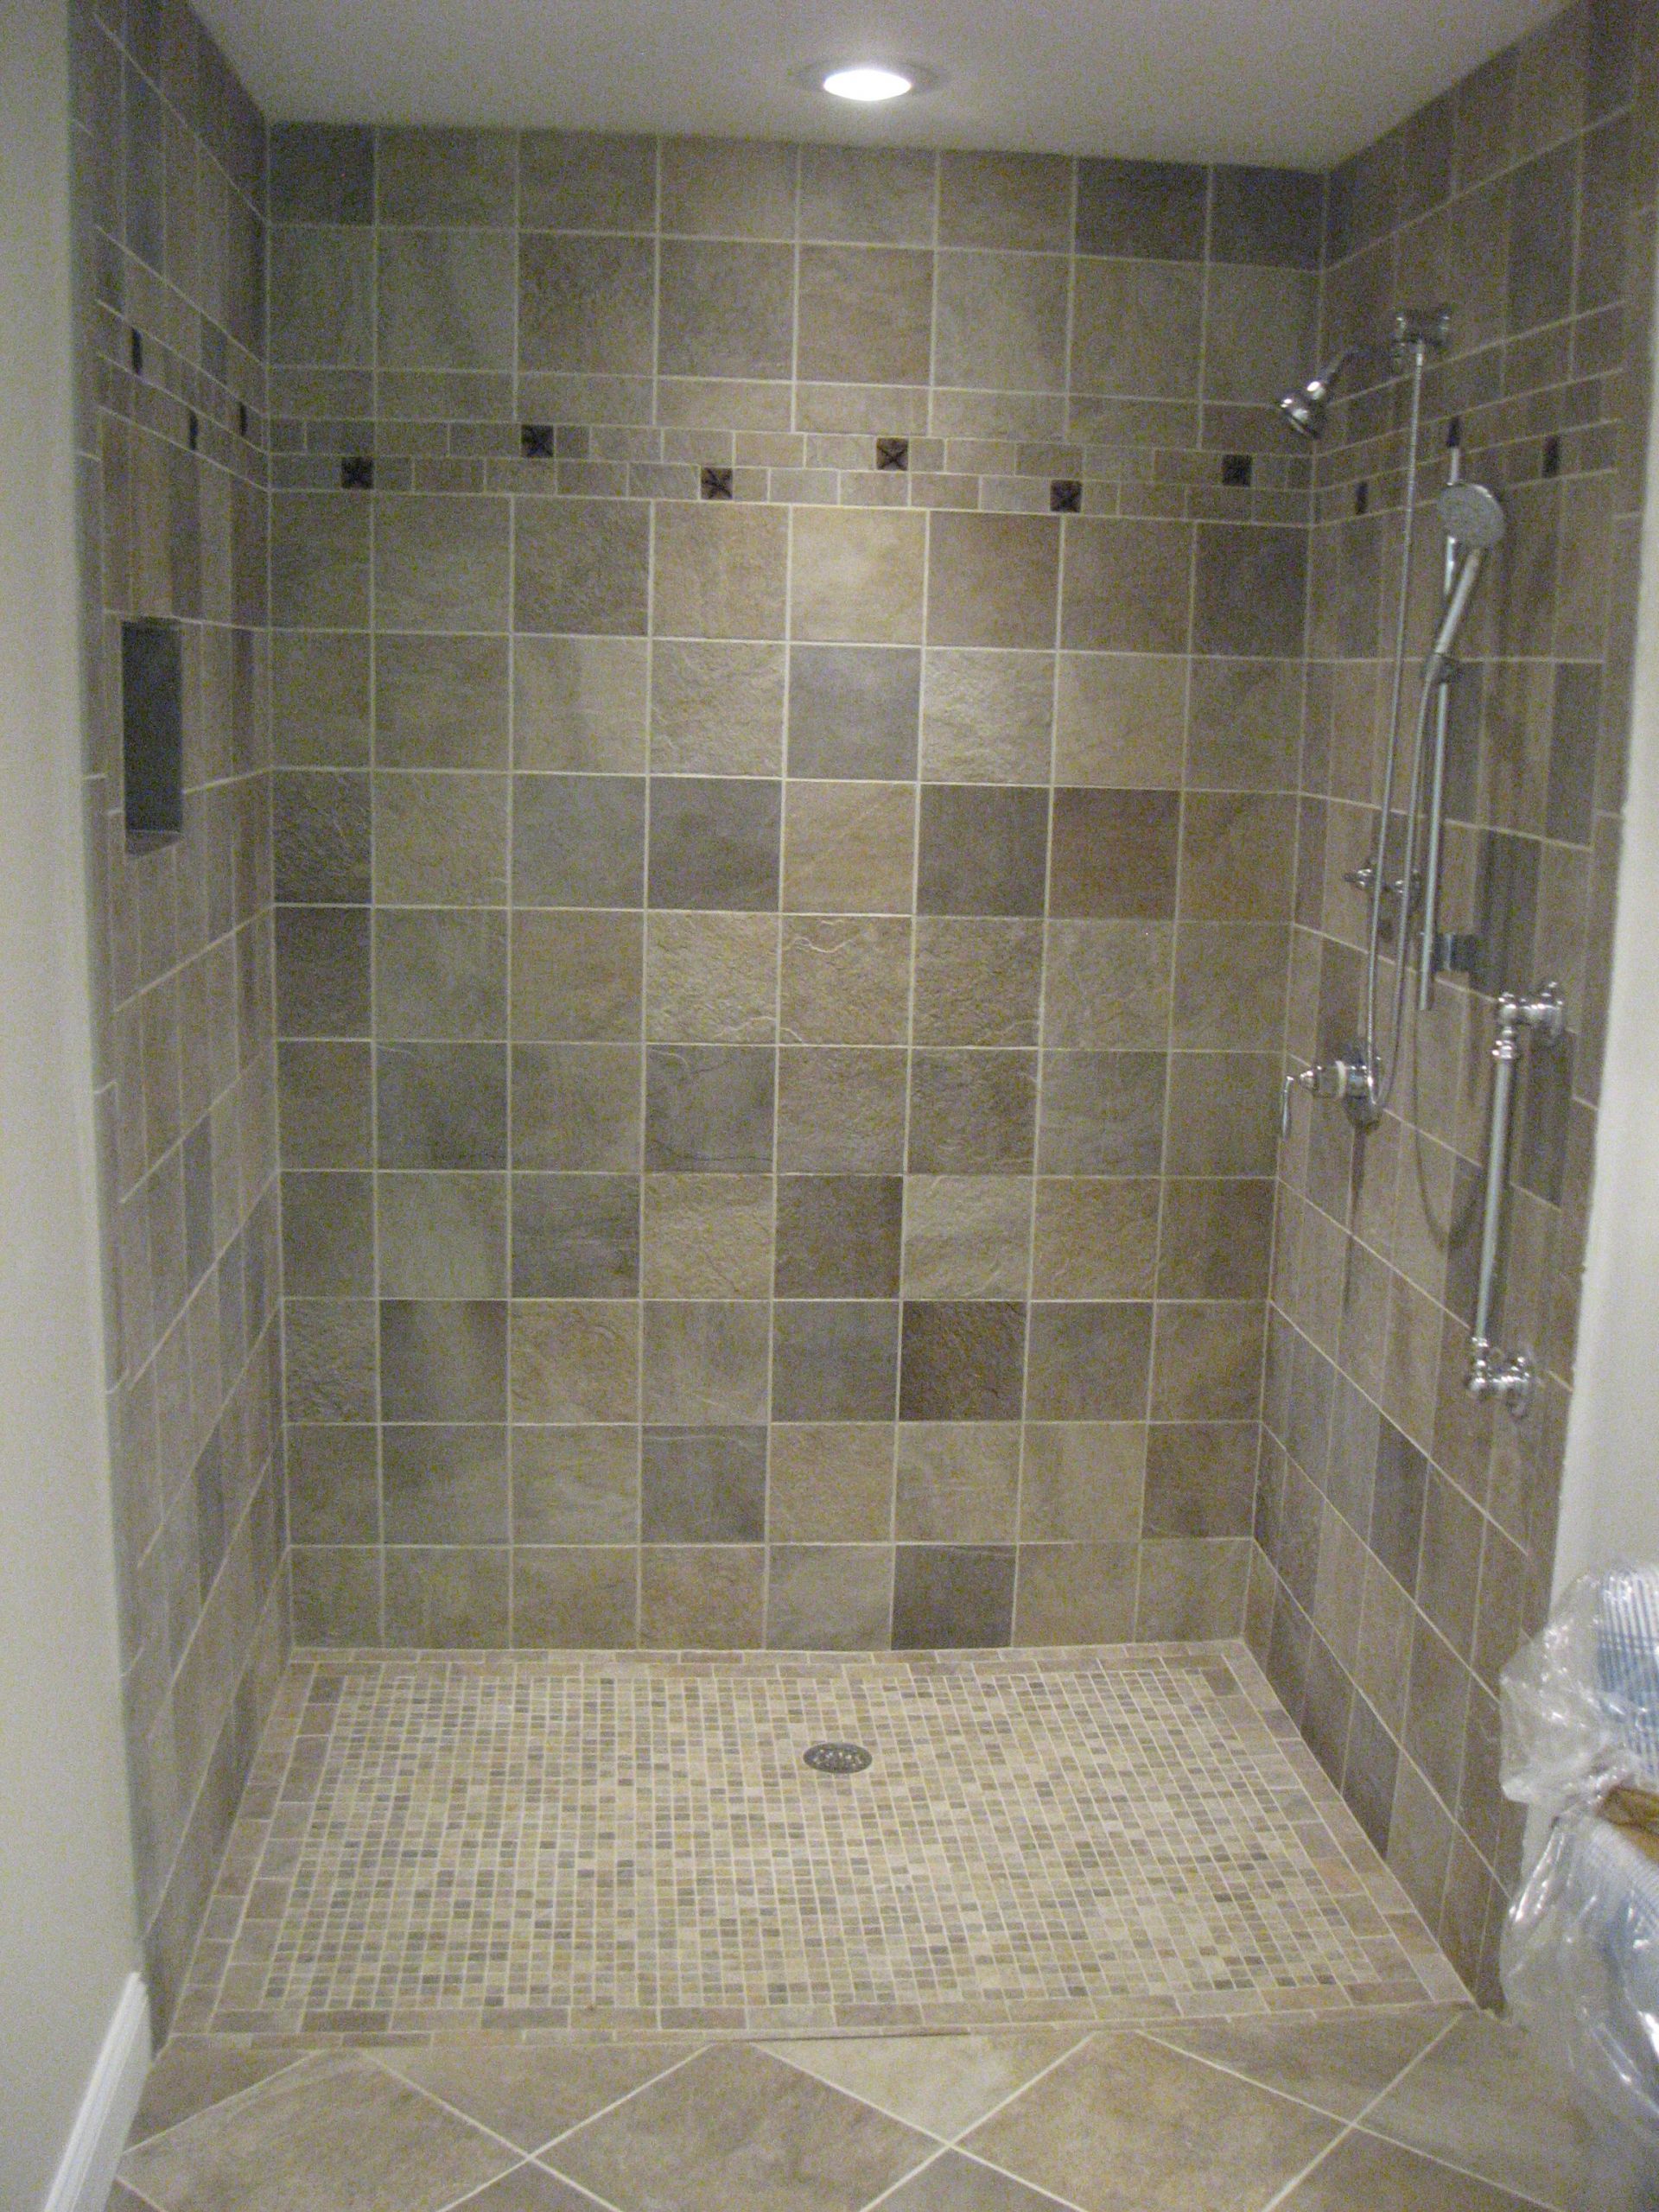 Bathroom Shower Floor Tile Ideas
 Bathroom Design Most Luxurious Bath With Shower Tile